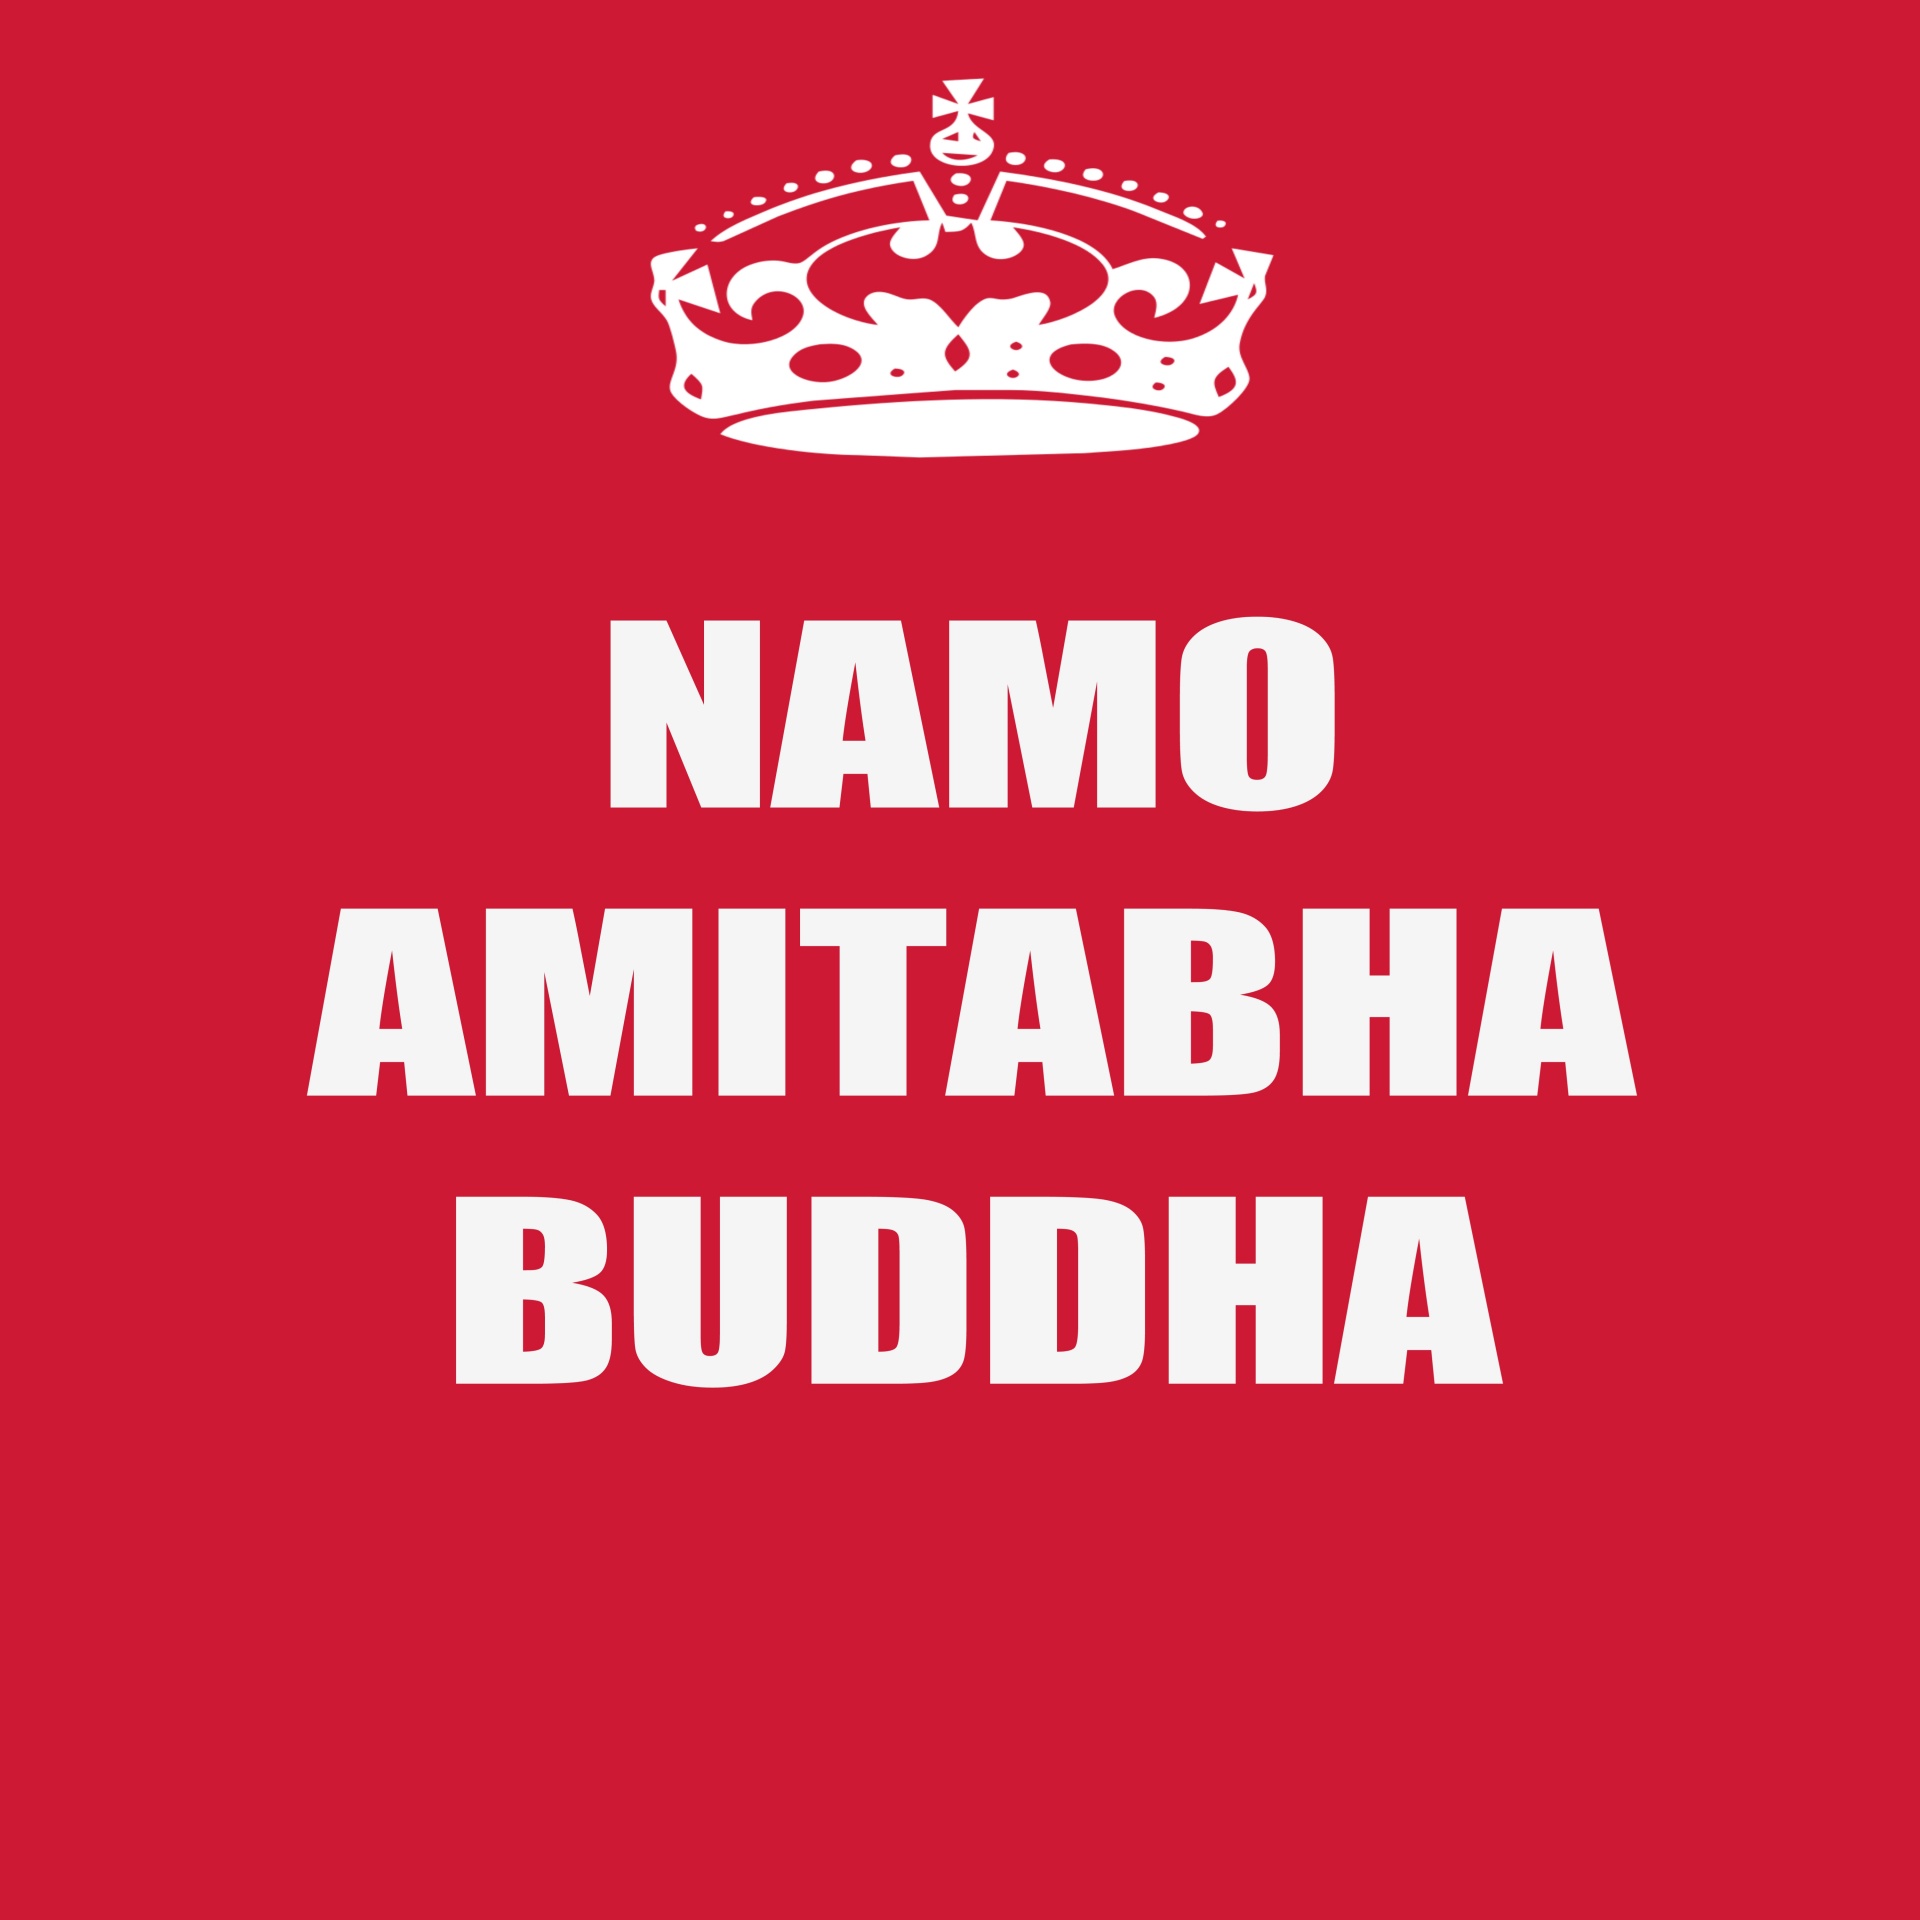 Namo amitabha boeddha 1